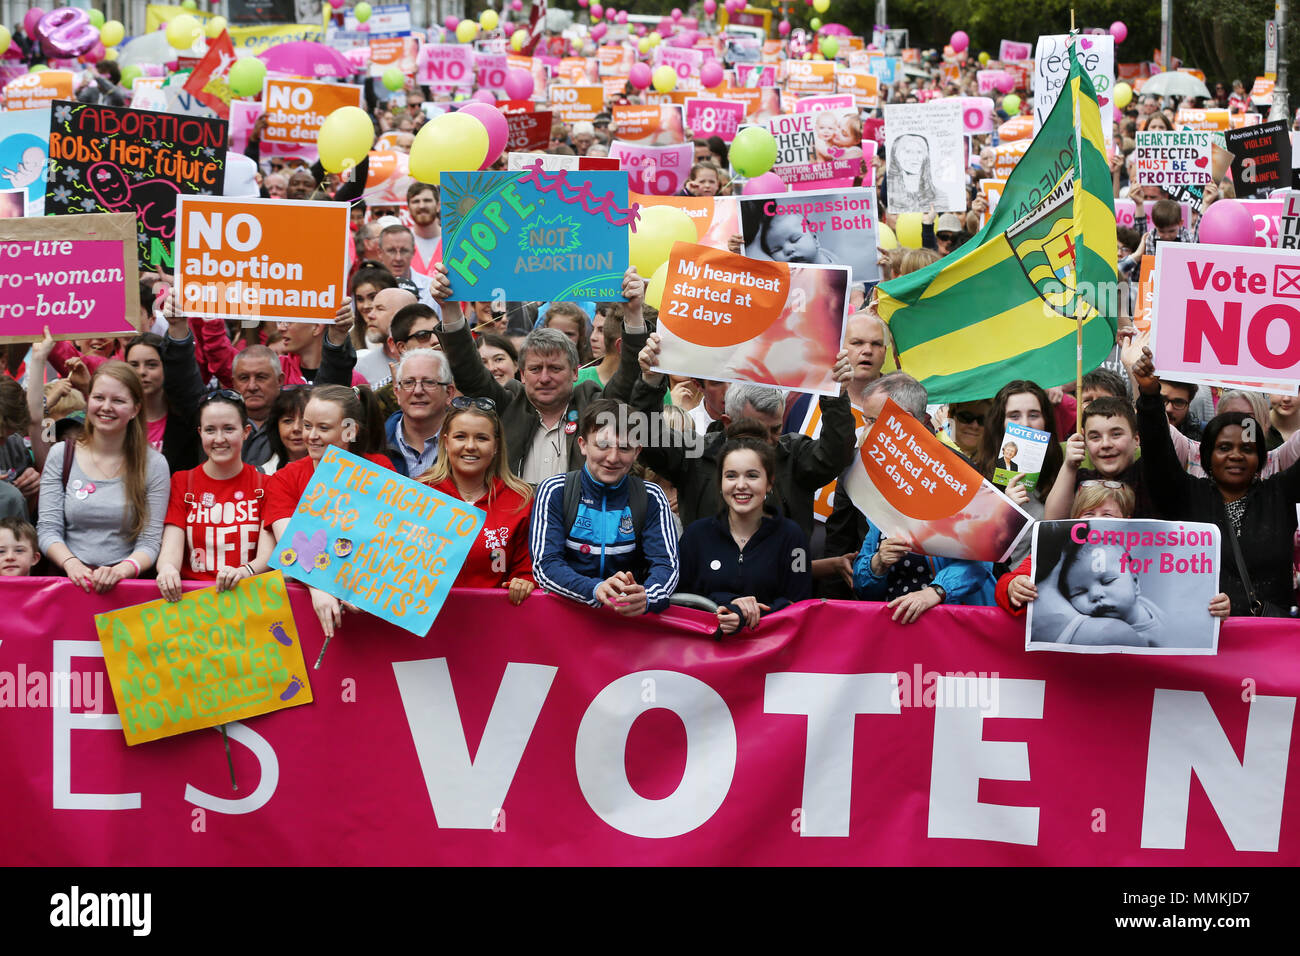 12/05/2018. Liebe sowohl Rallye, bei der Unterstützung einer Abtreibung keine Abstimmung im irischen Referendum, Dublin, Irland Stockfoto